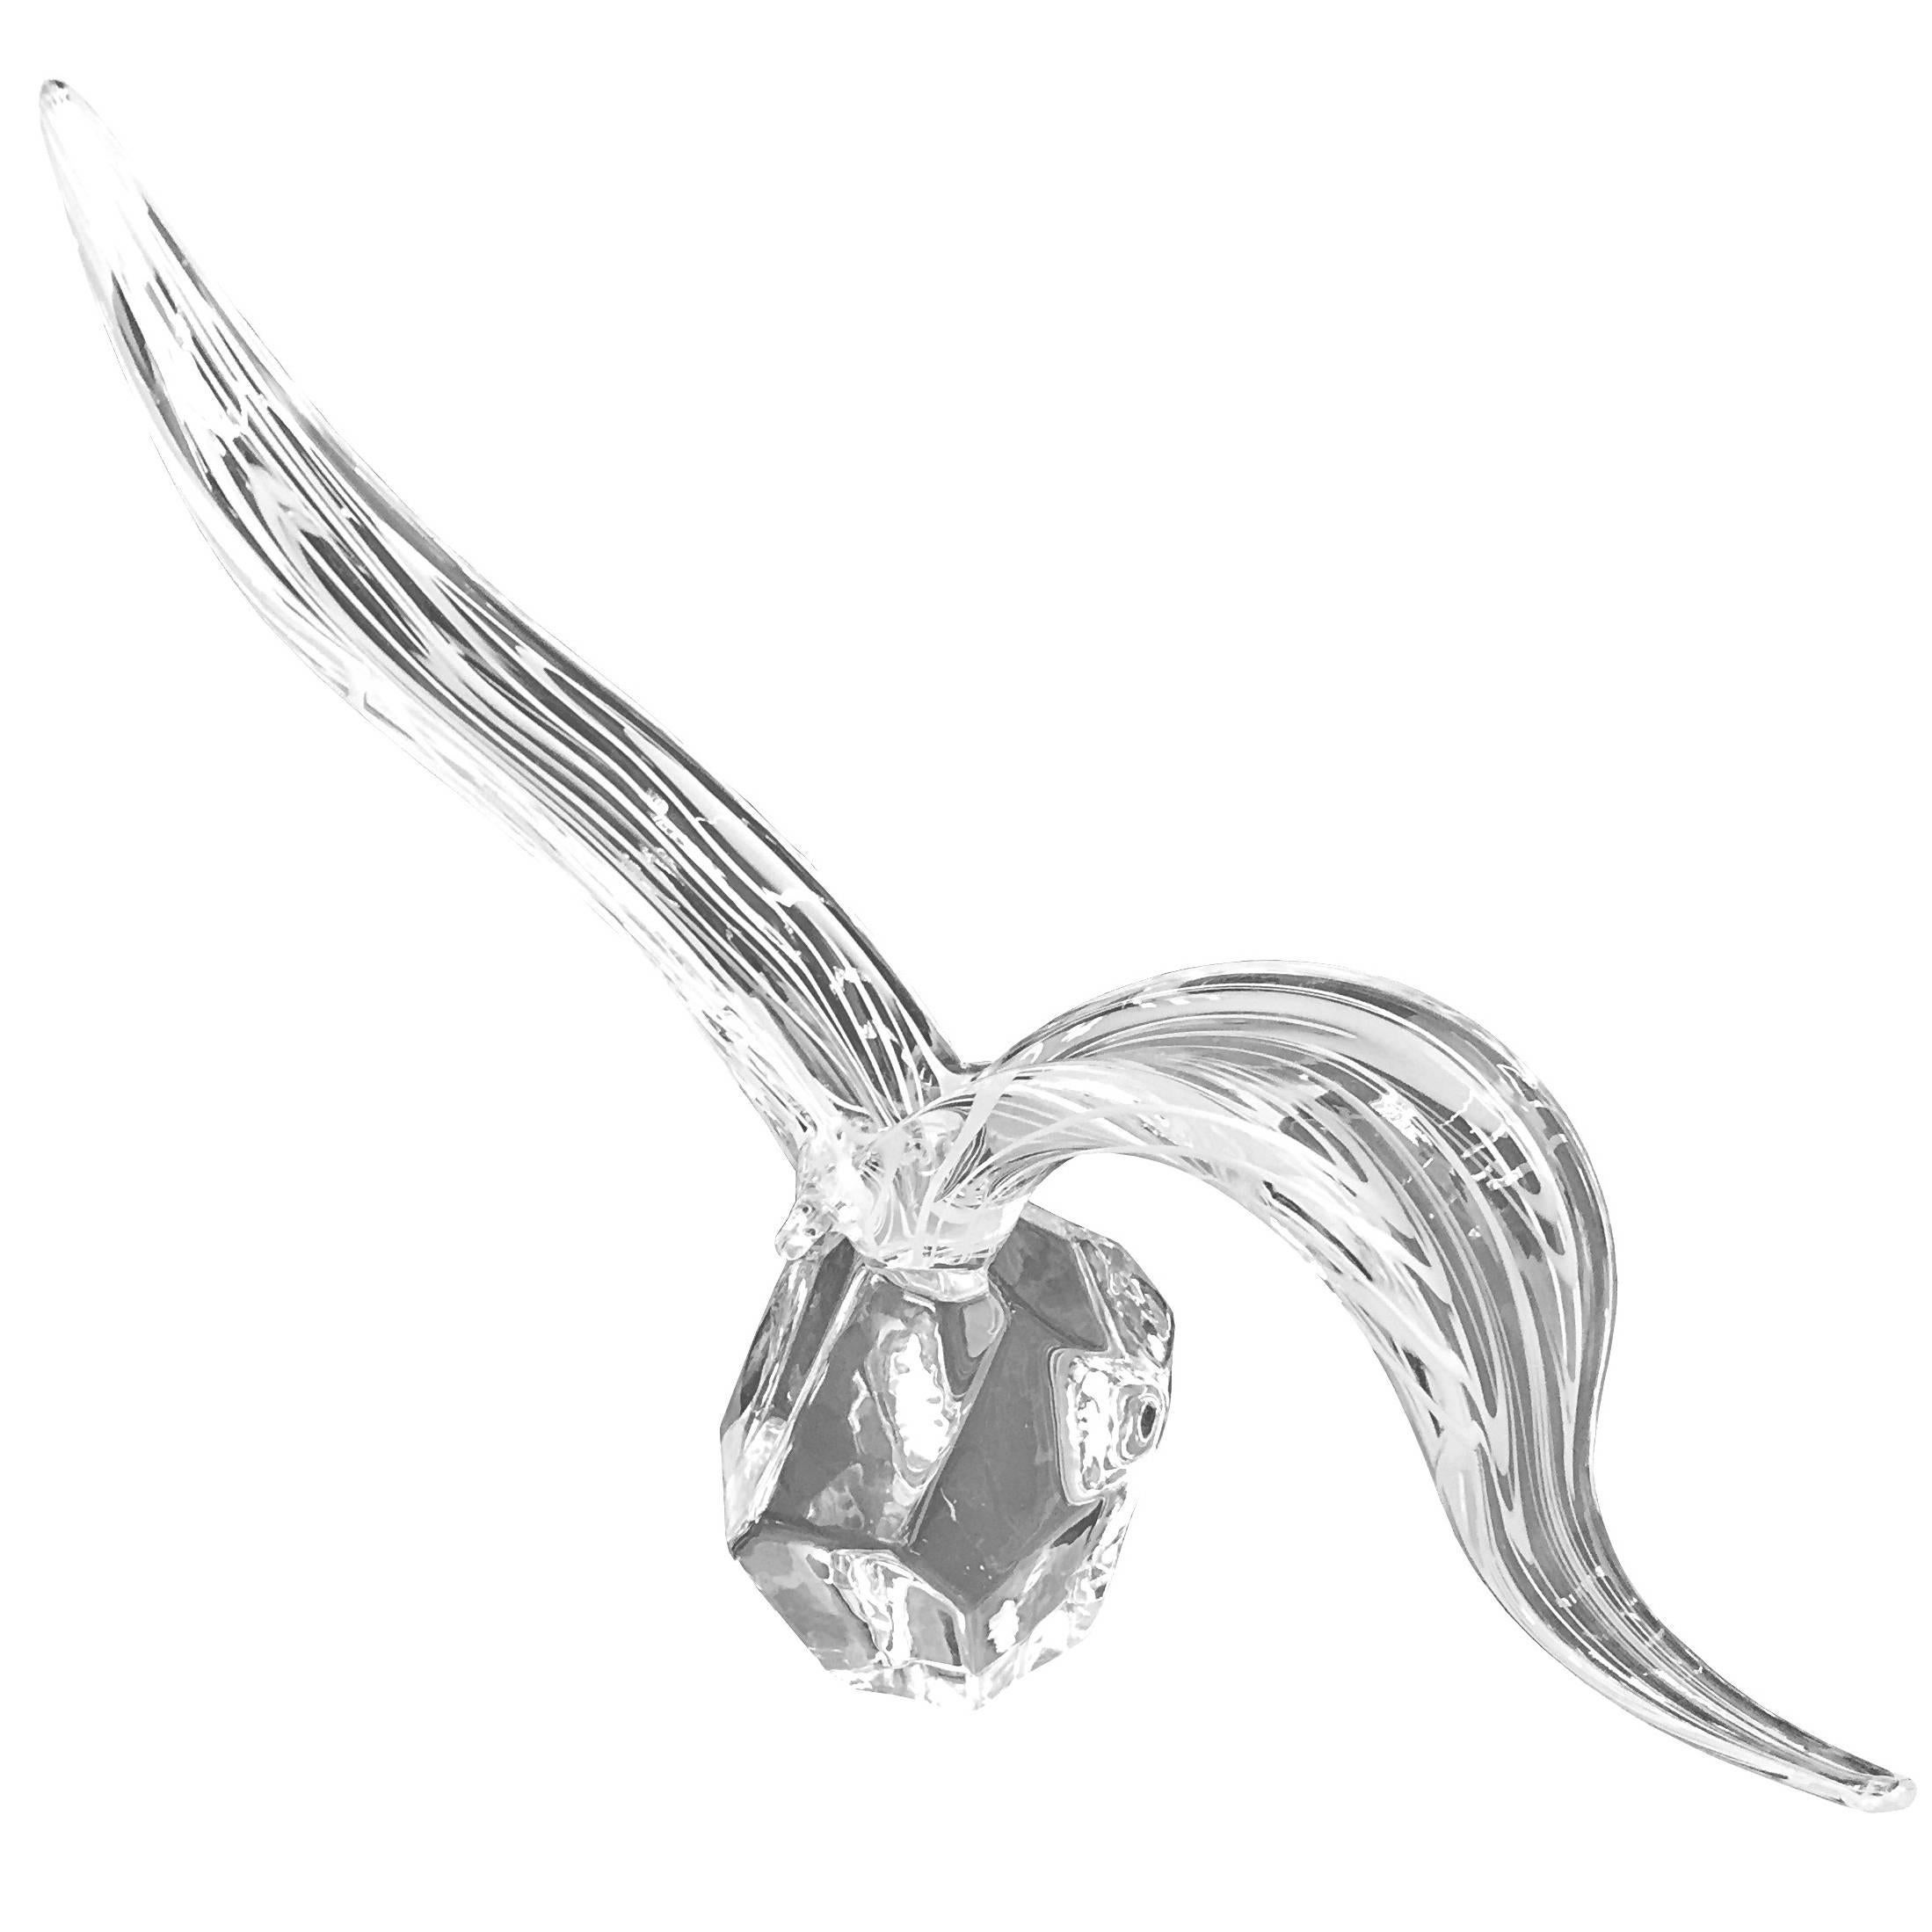 Vintage Murano Glass Sculpture by Licio Zanetti "Bird at Flight"